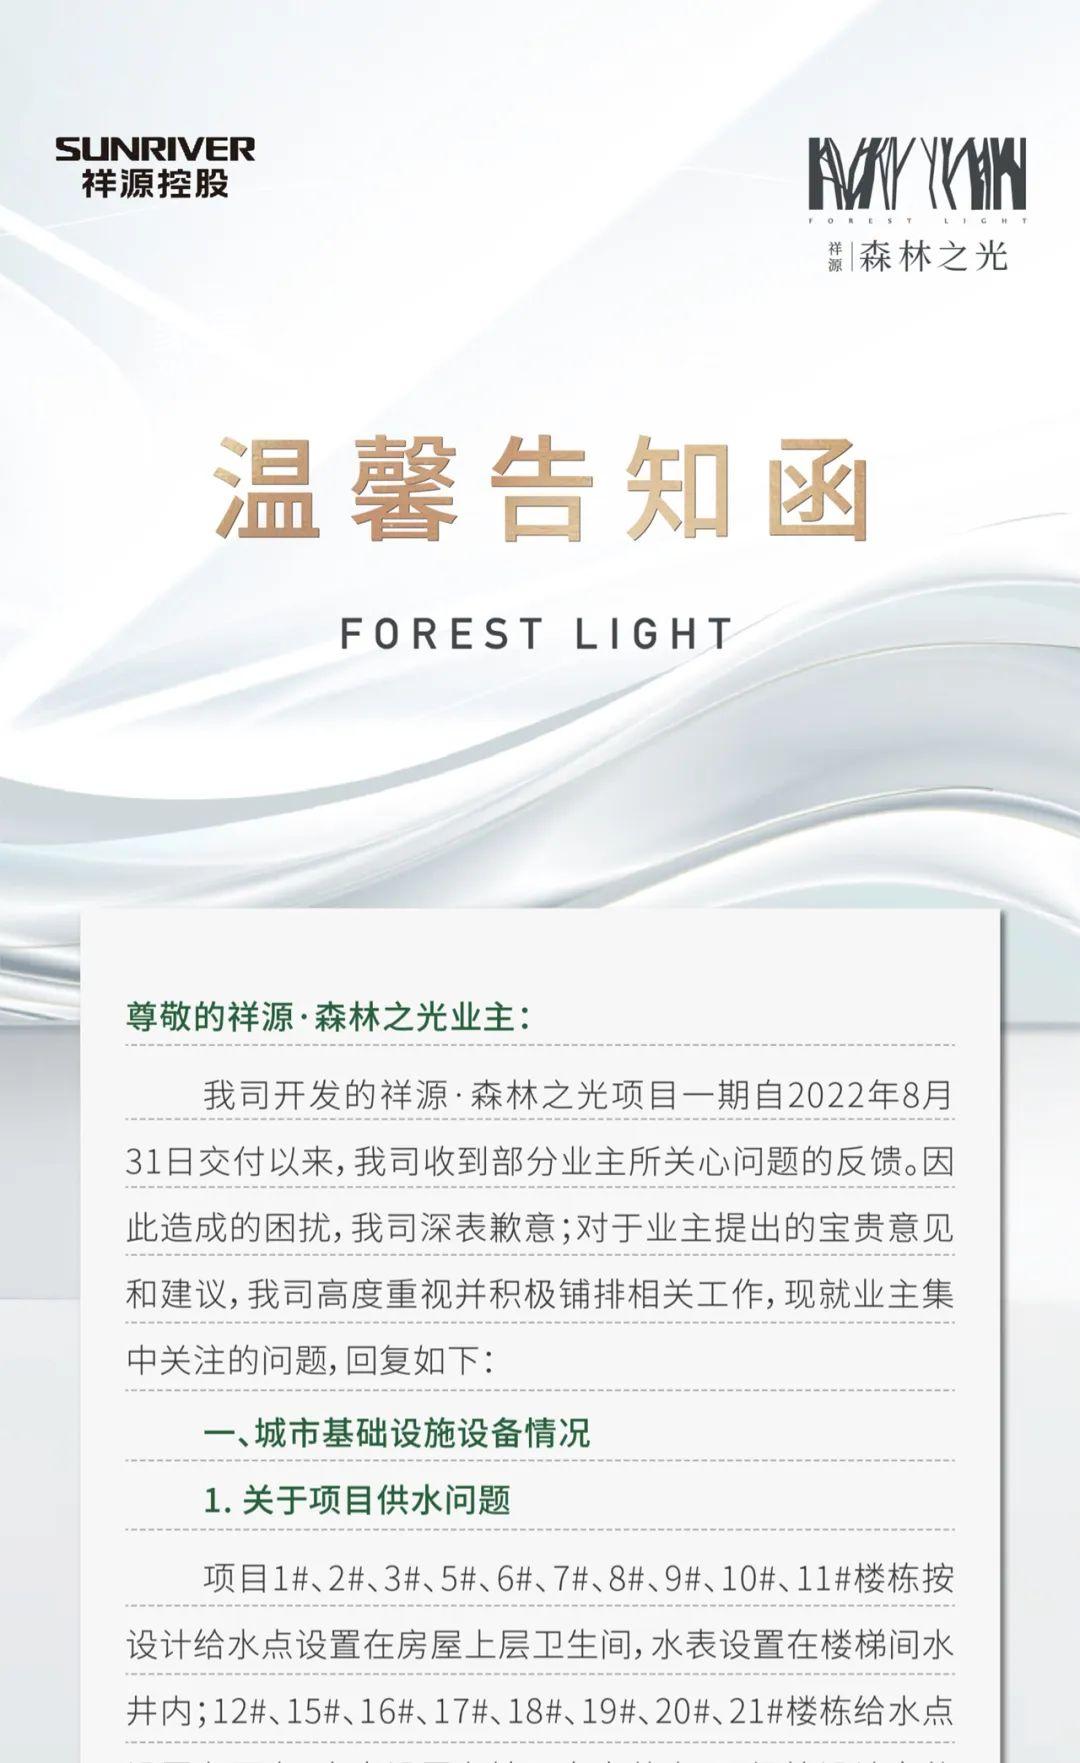 9月6日祥源森林之光关于一期已交付的相关公告